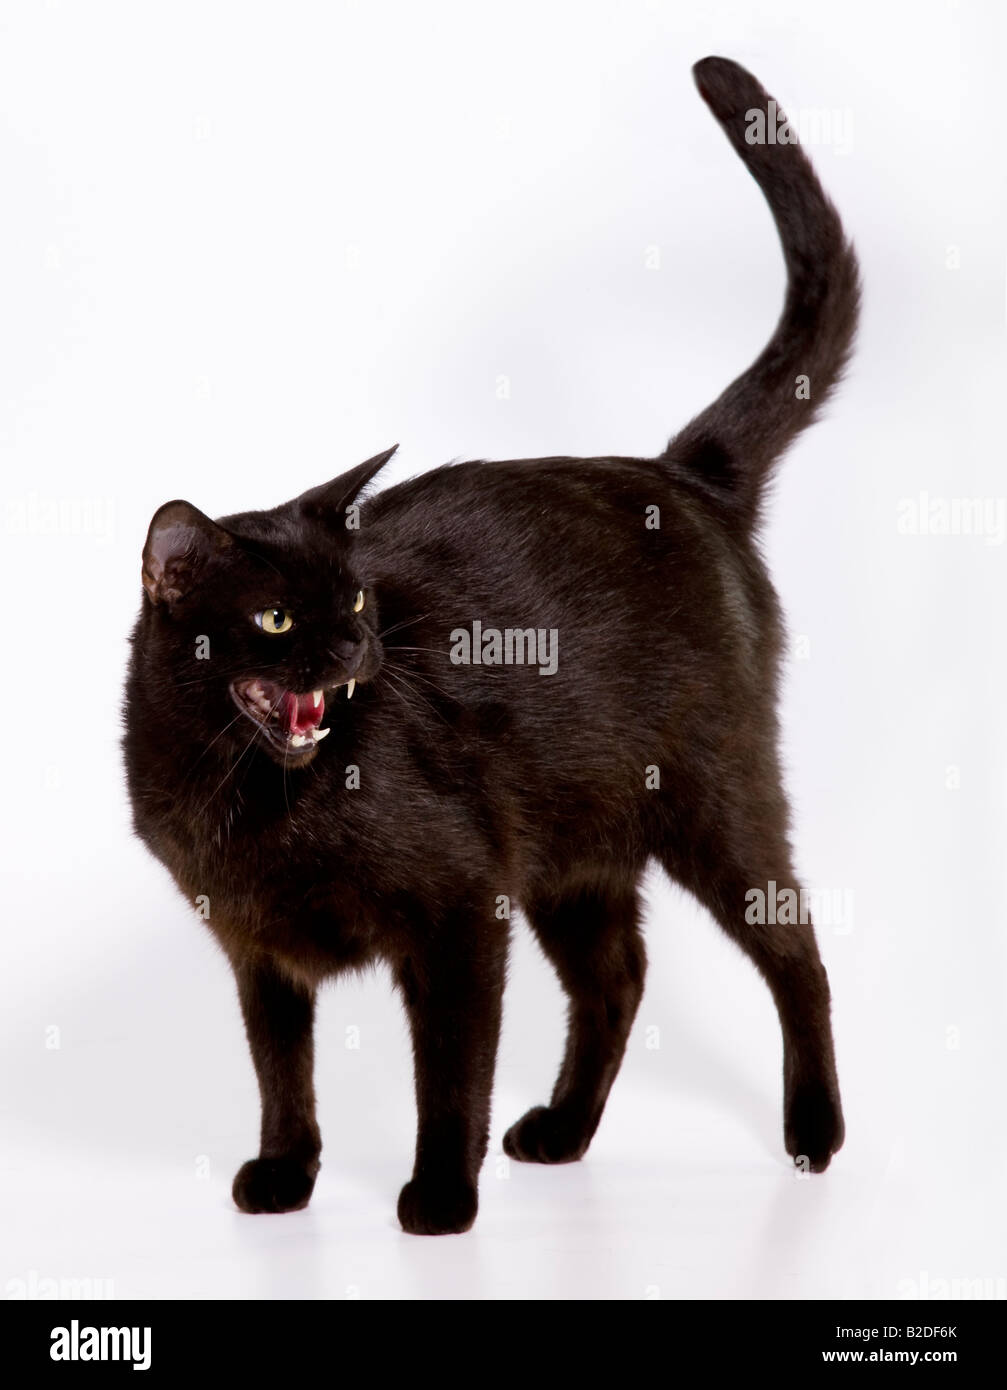 Un chat noir frappe une posture défensive Banque D'Images